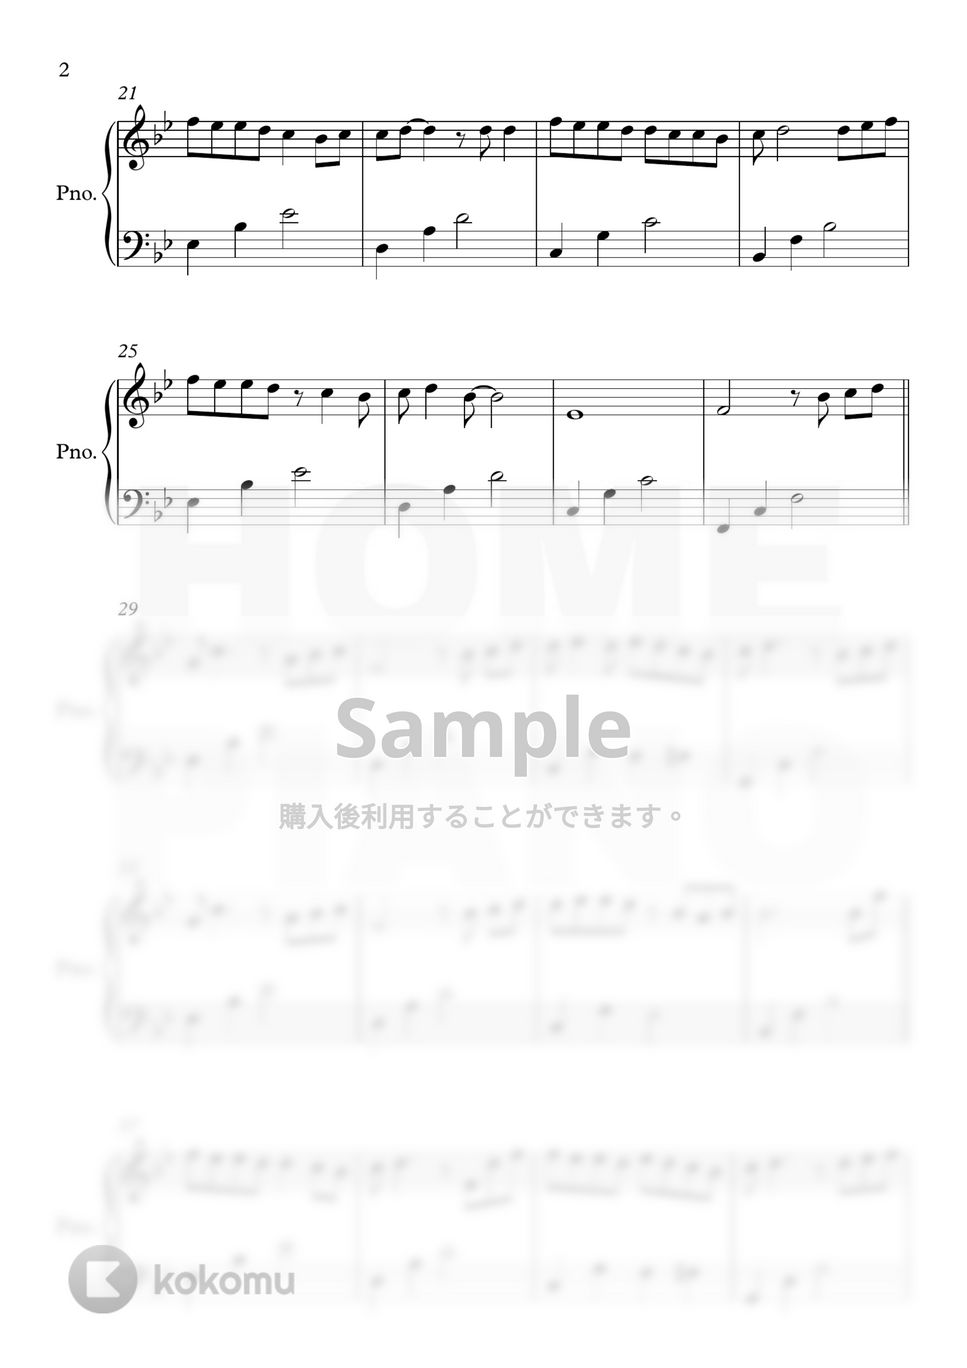 パク・ウォン - 努力 (初級) by HOME PIANO